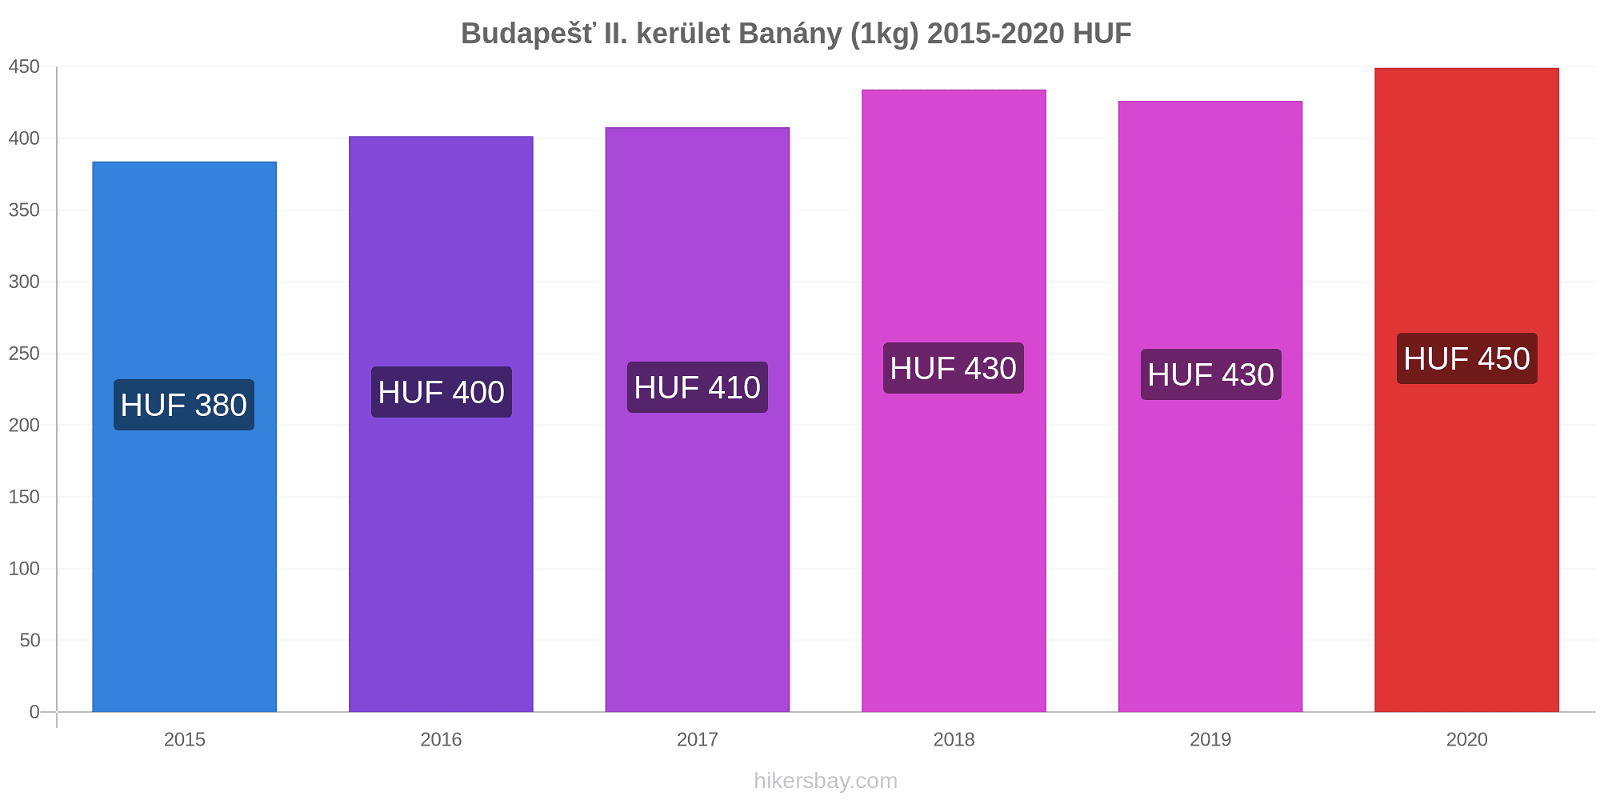 Budapešť II. kerület změny cen Banány (1kg) hikersbay.com